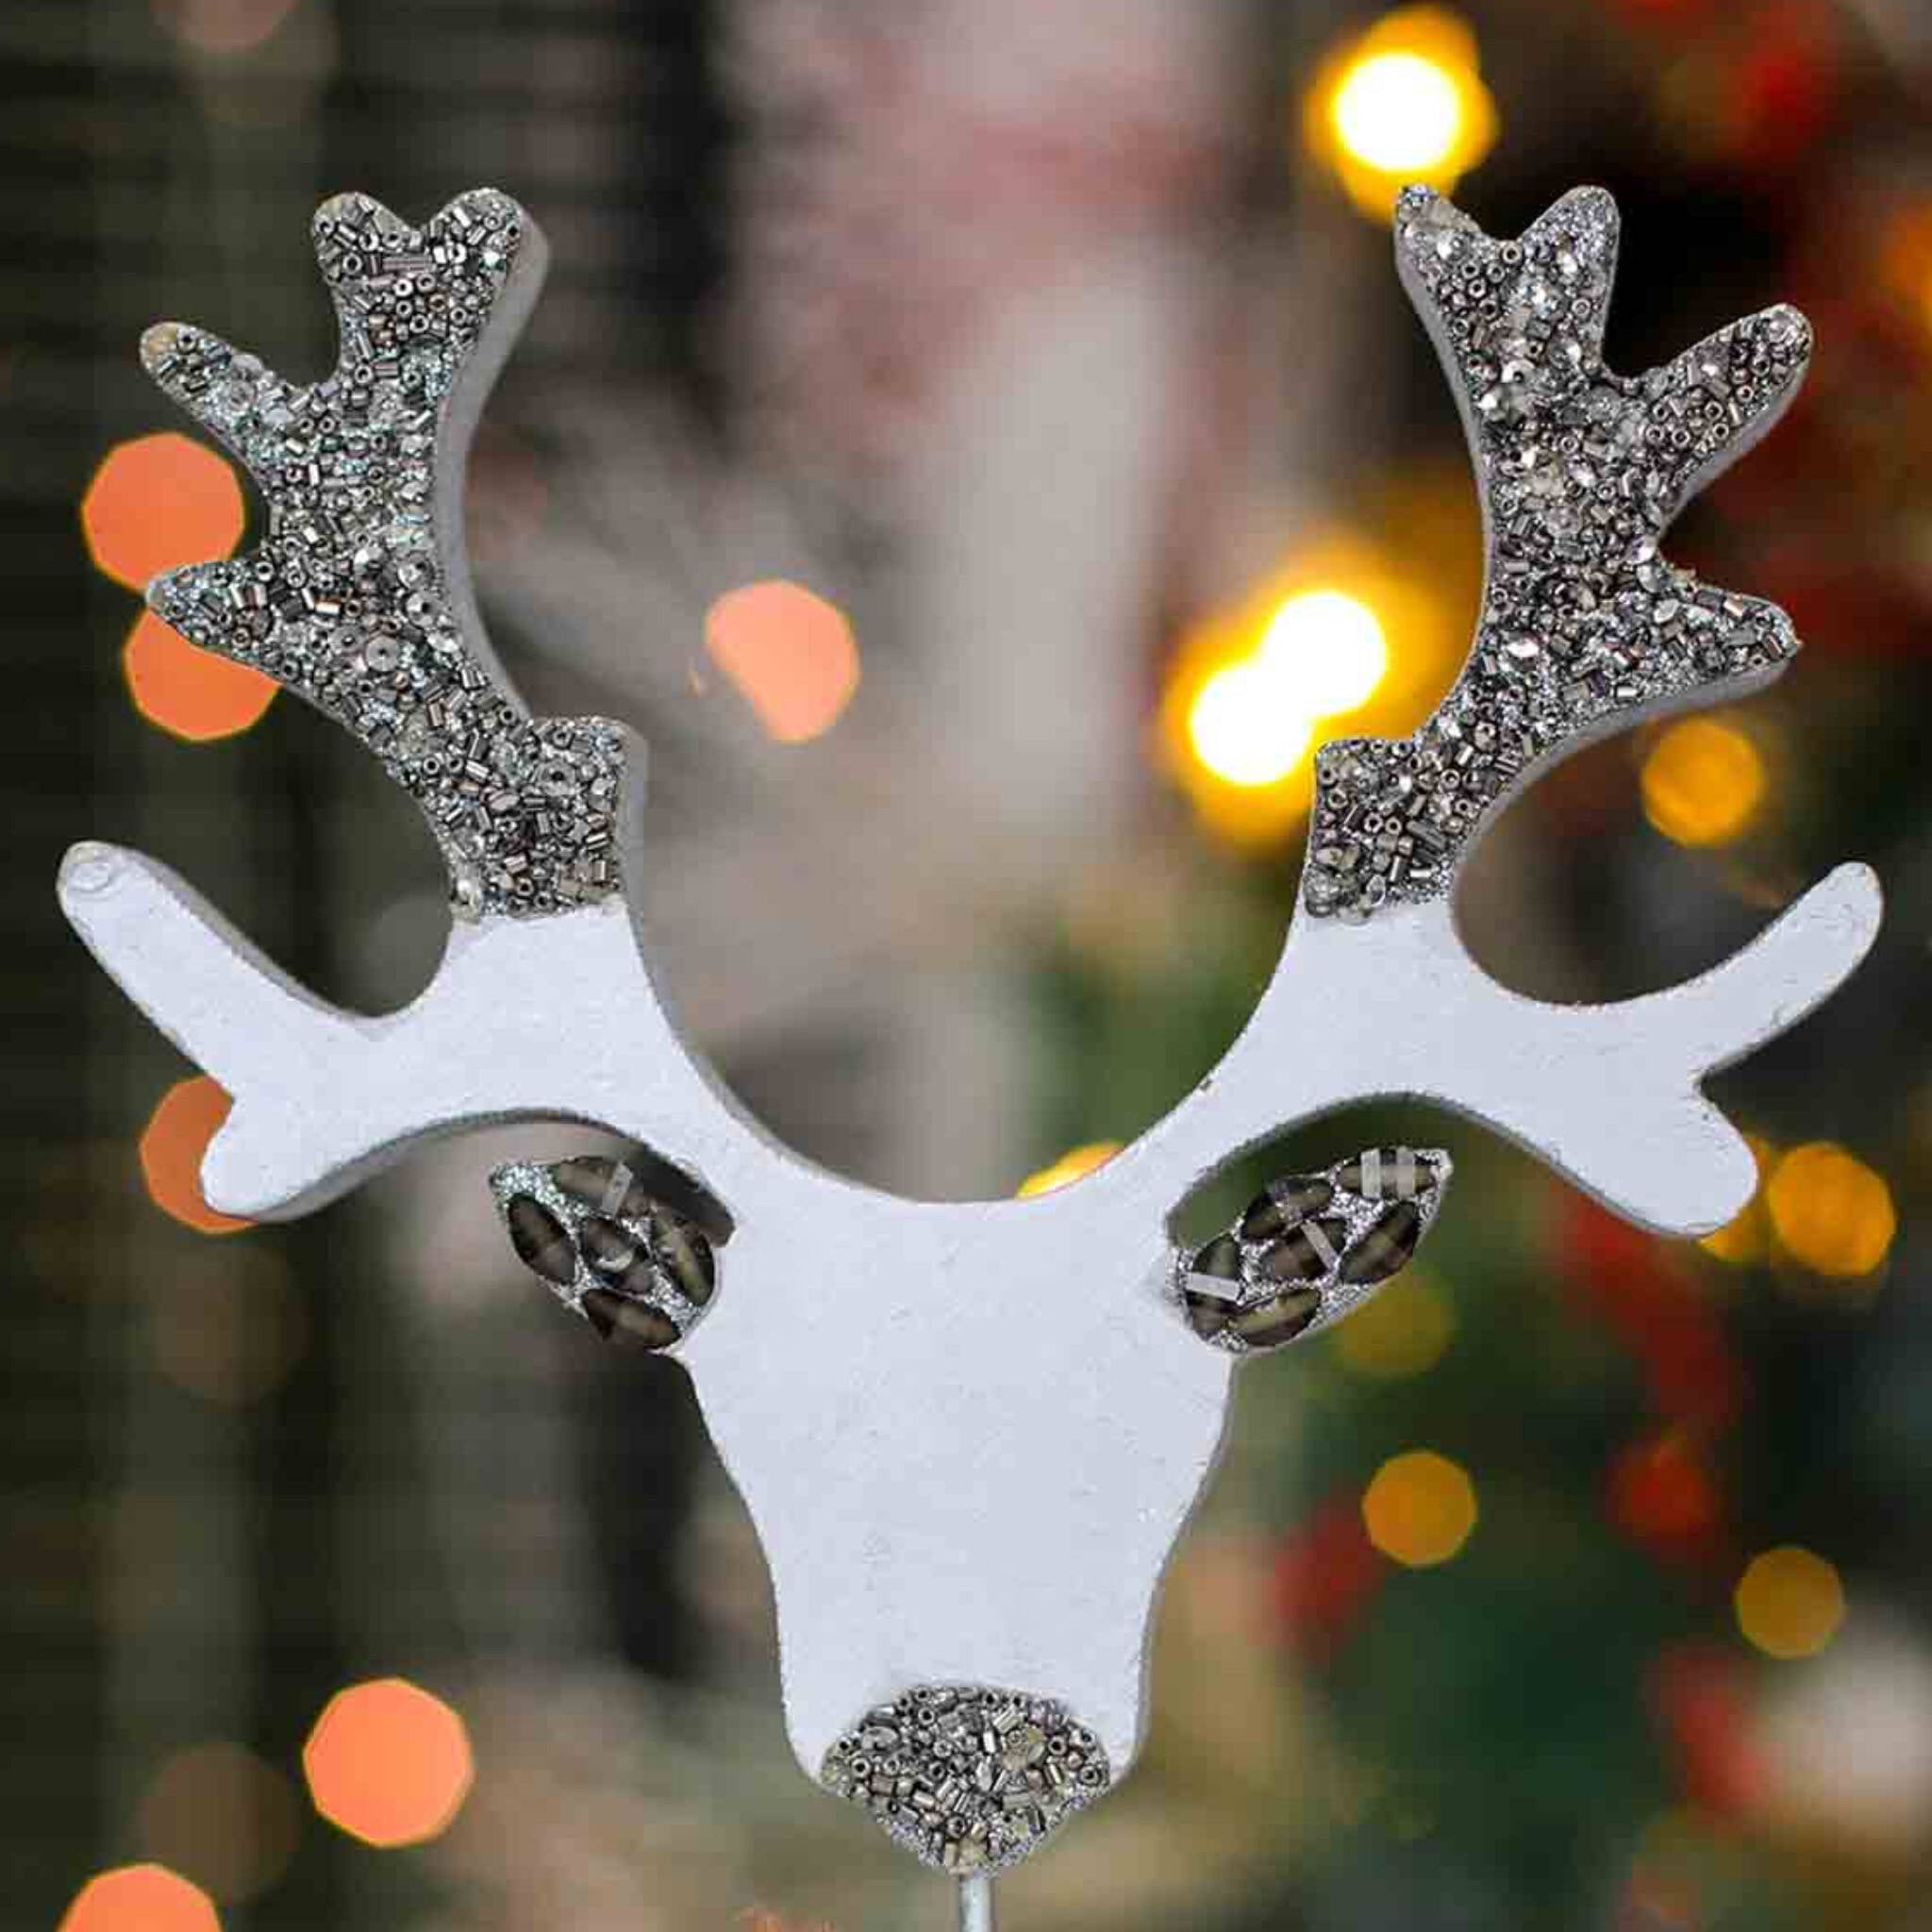 Oh Deer! Wood Sculpture # 2 in Silver